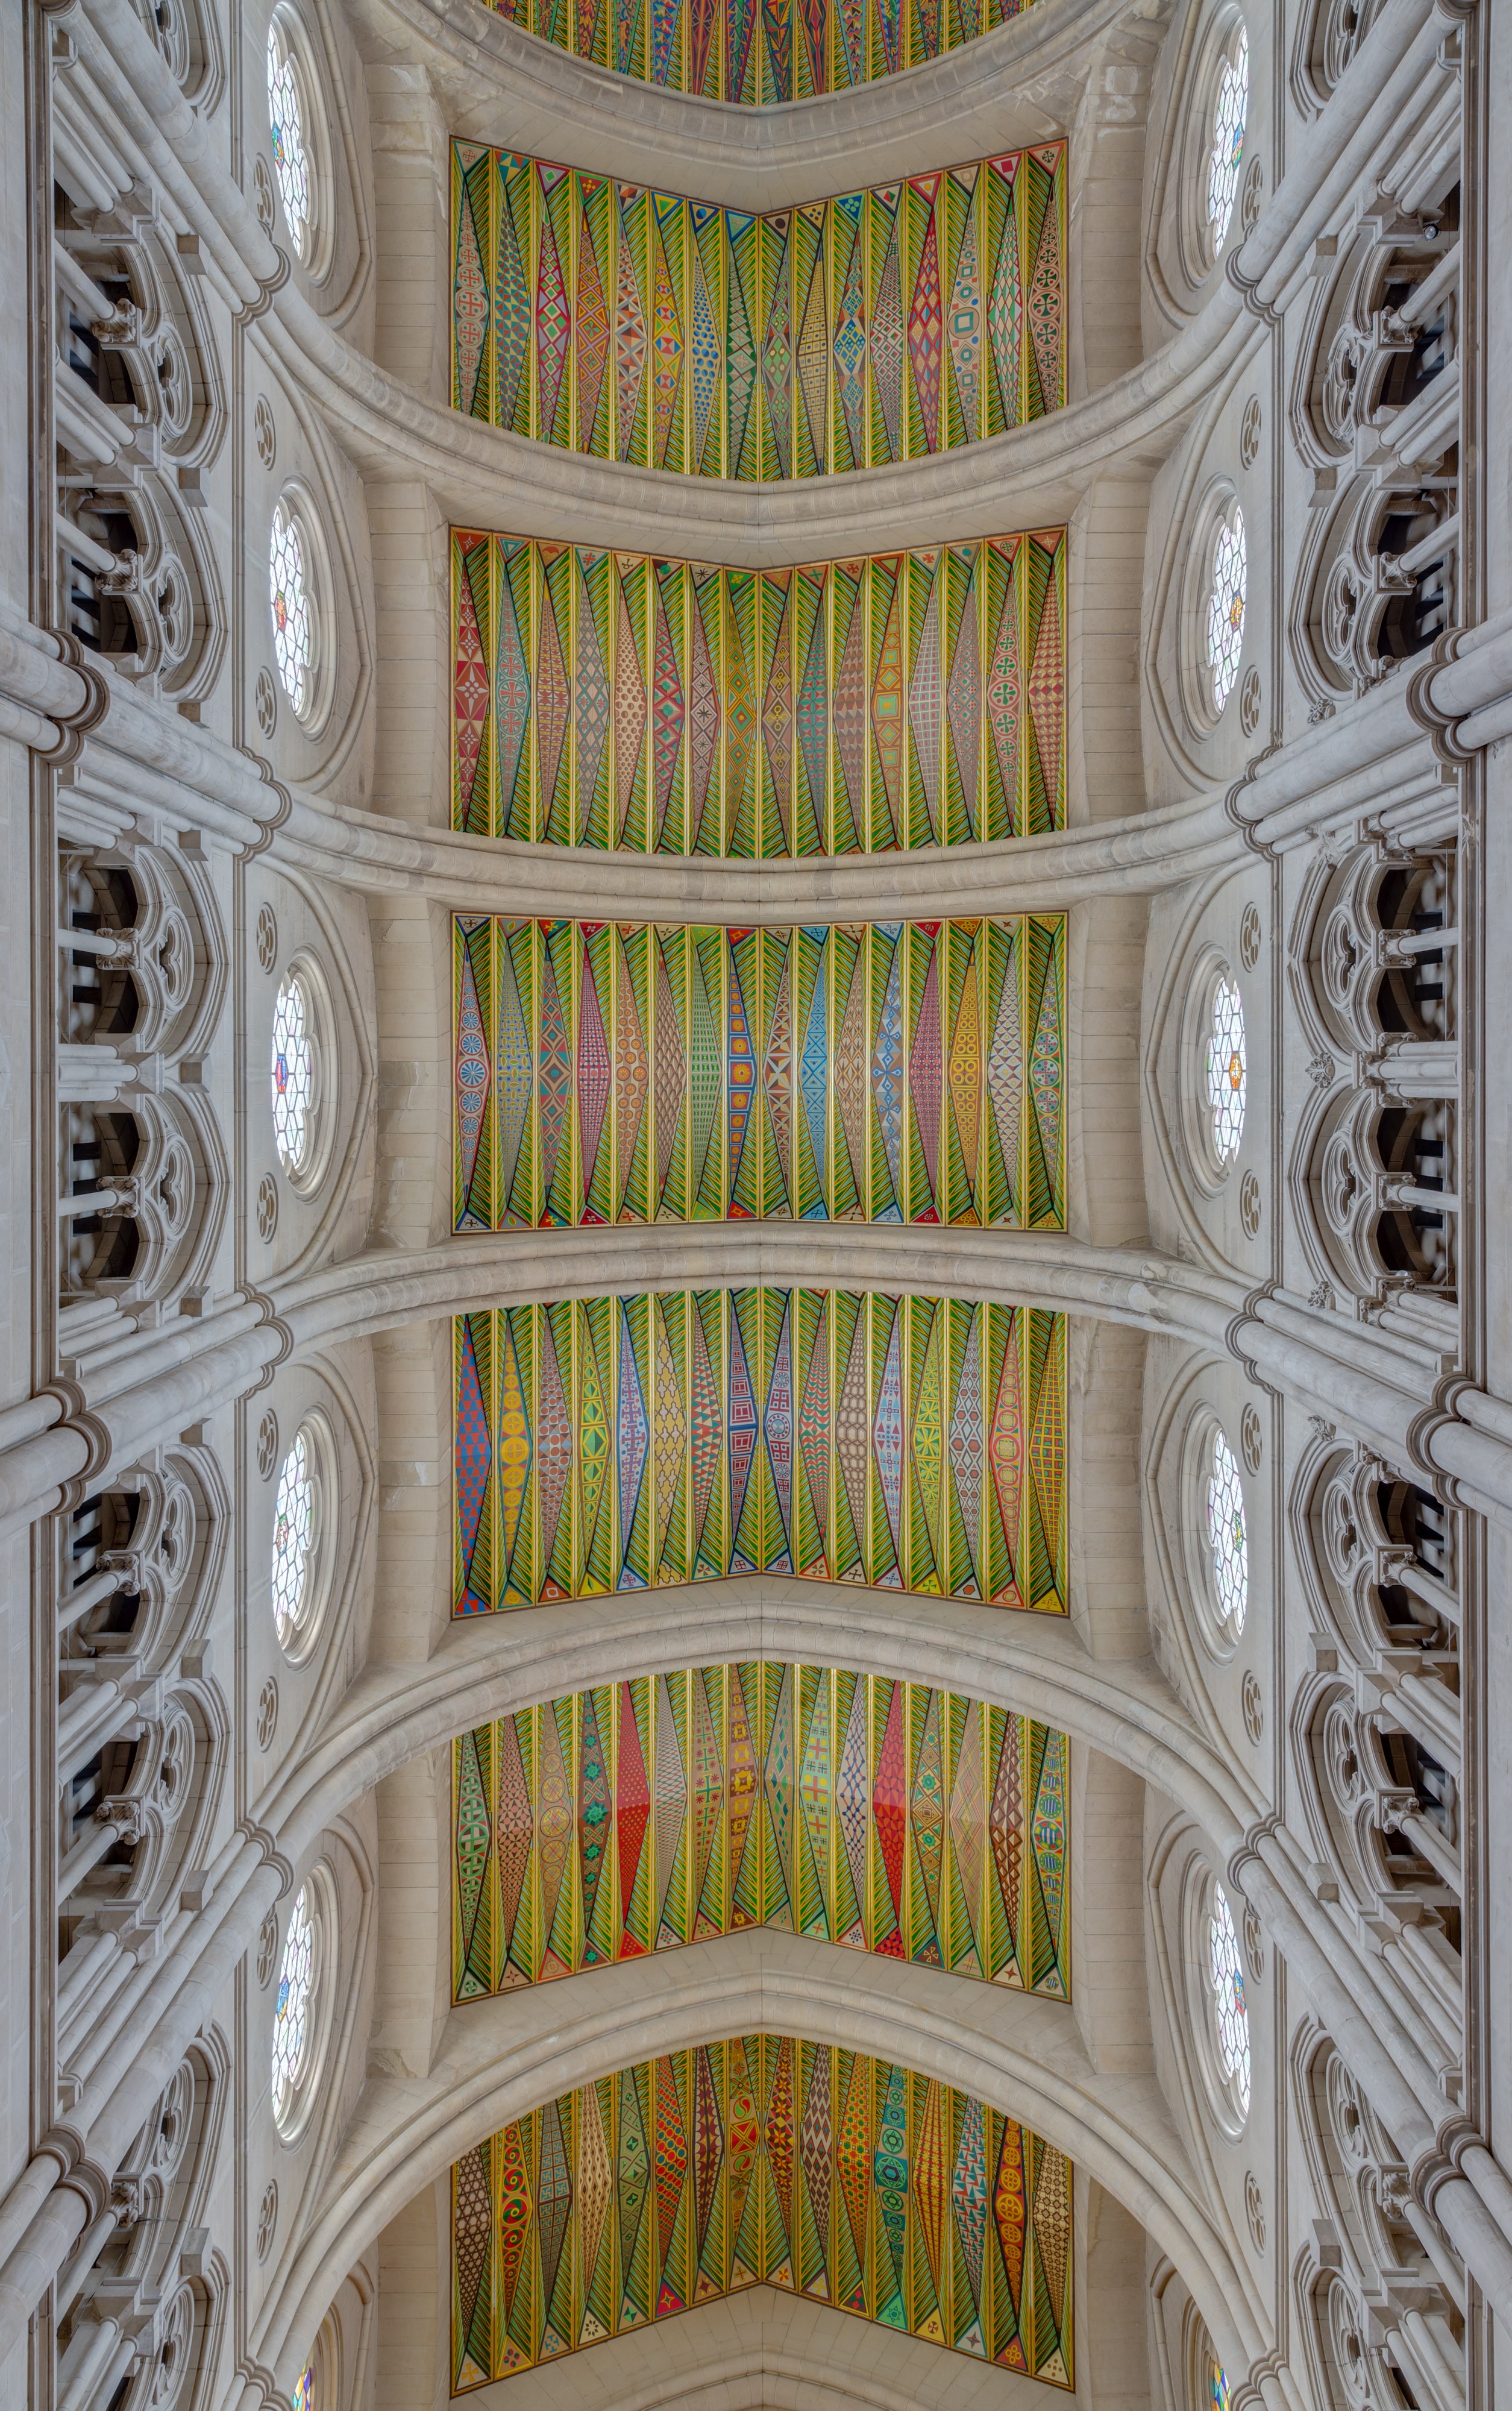 Catedral de la Almudena, Madrid, España, 2014-12-27, DD 32